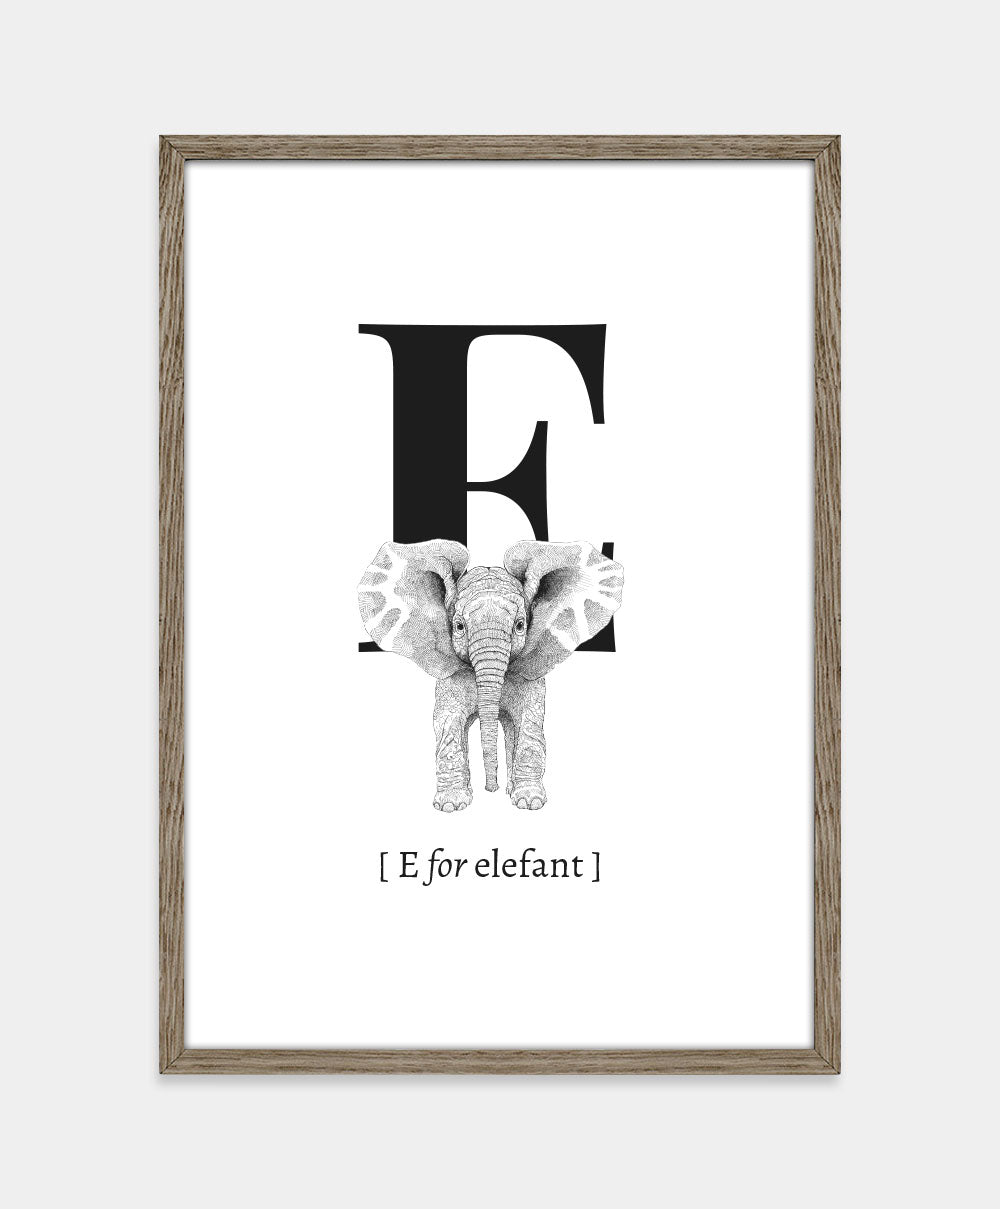 Bogstavplakat- E for elefant